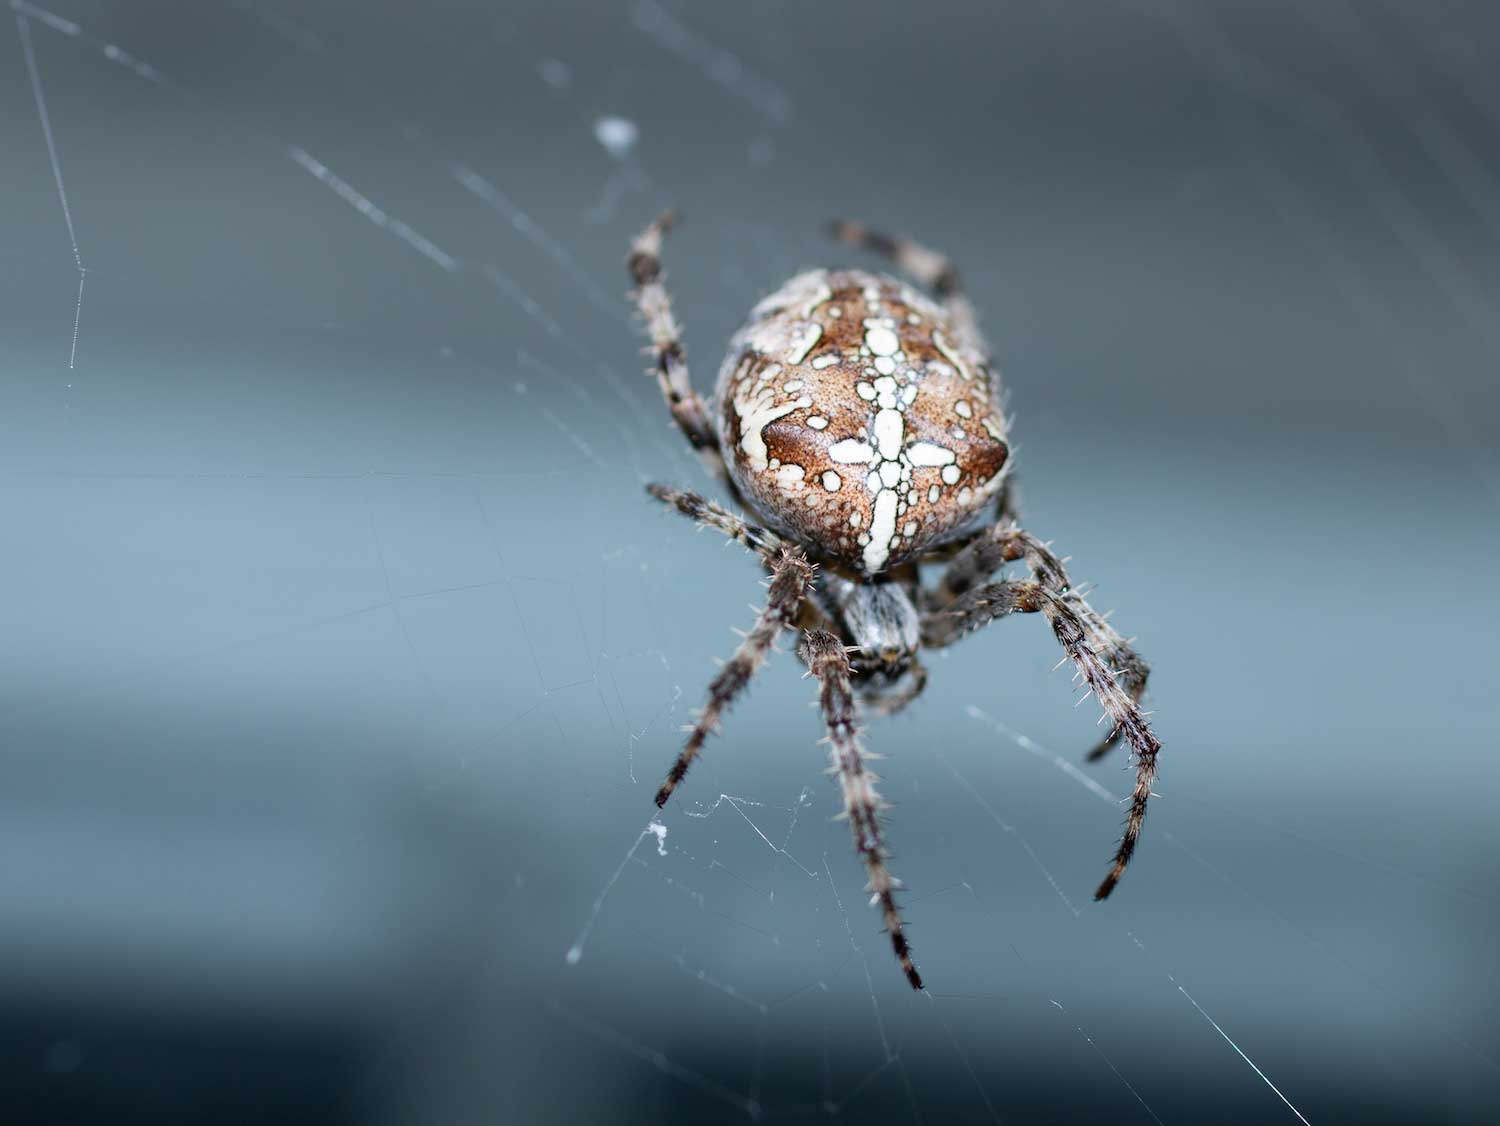 Arachnid - 8 Legs, Spiders, Scorpions